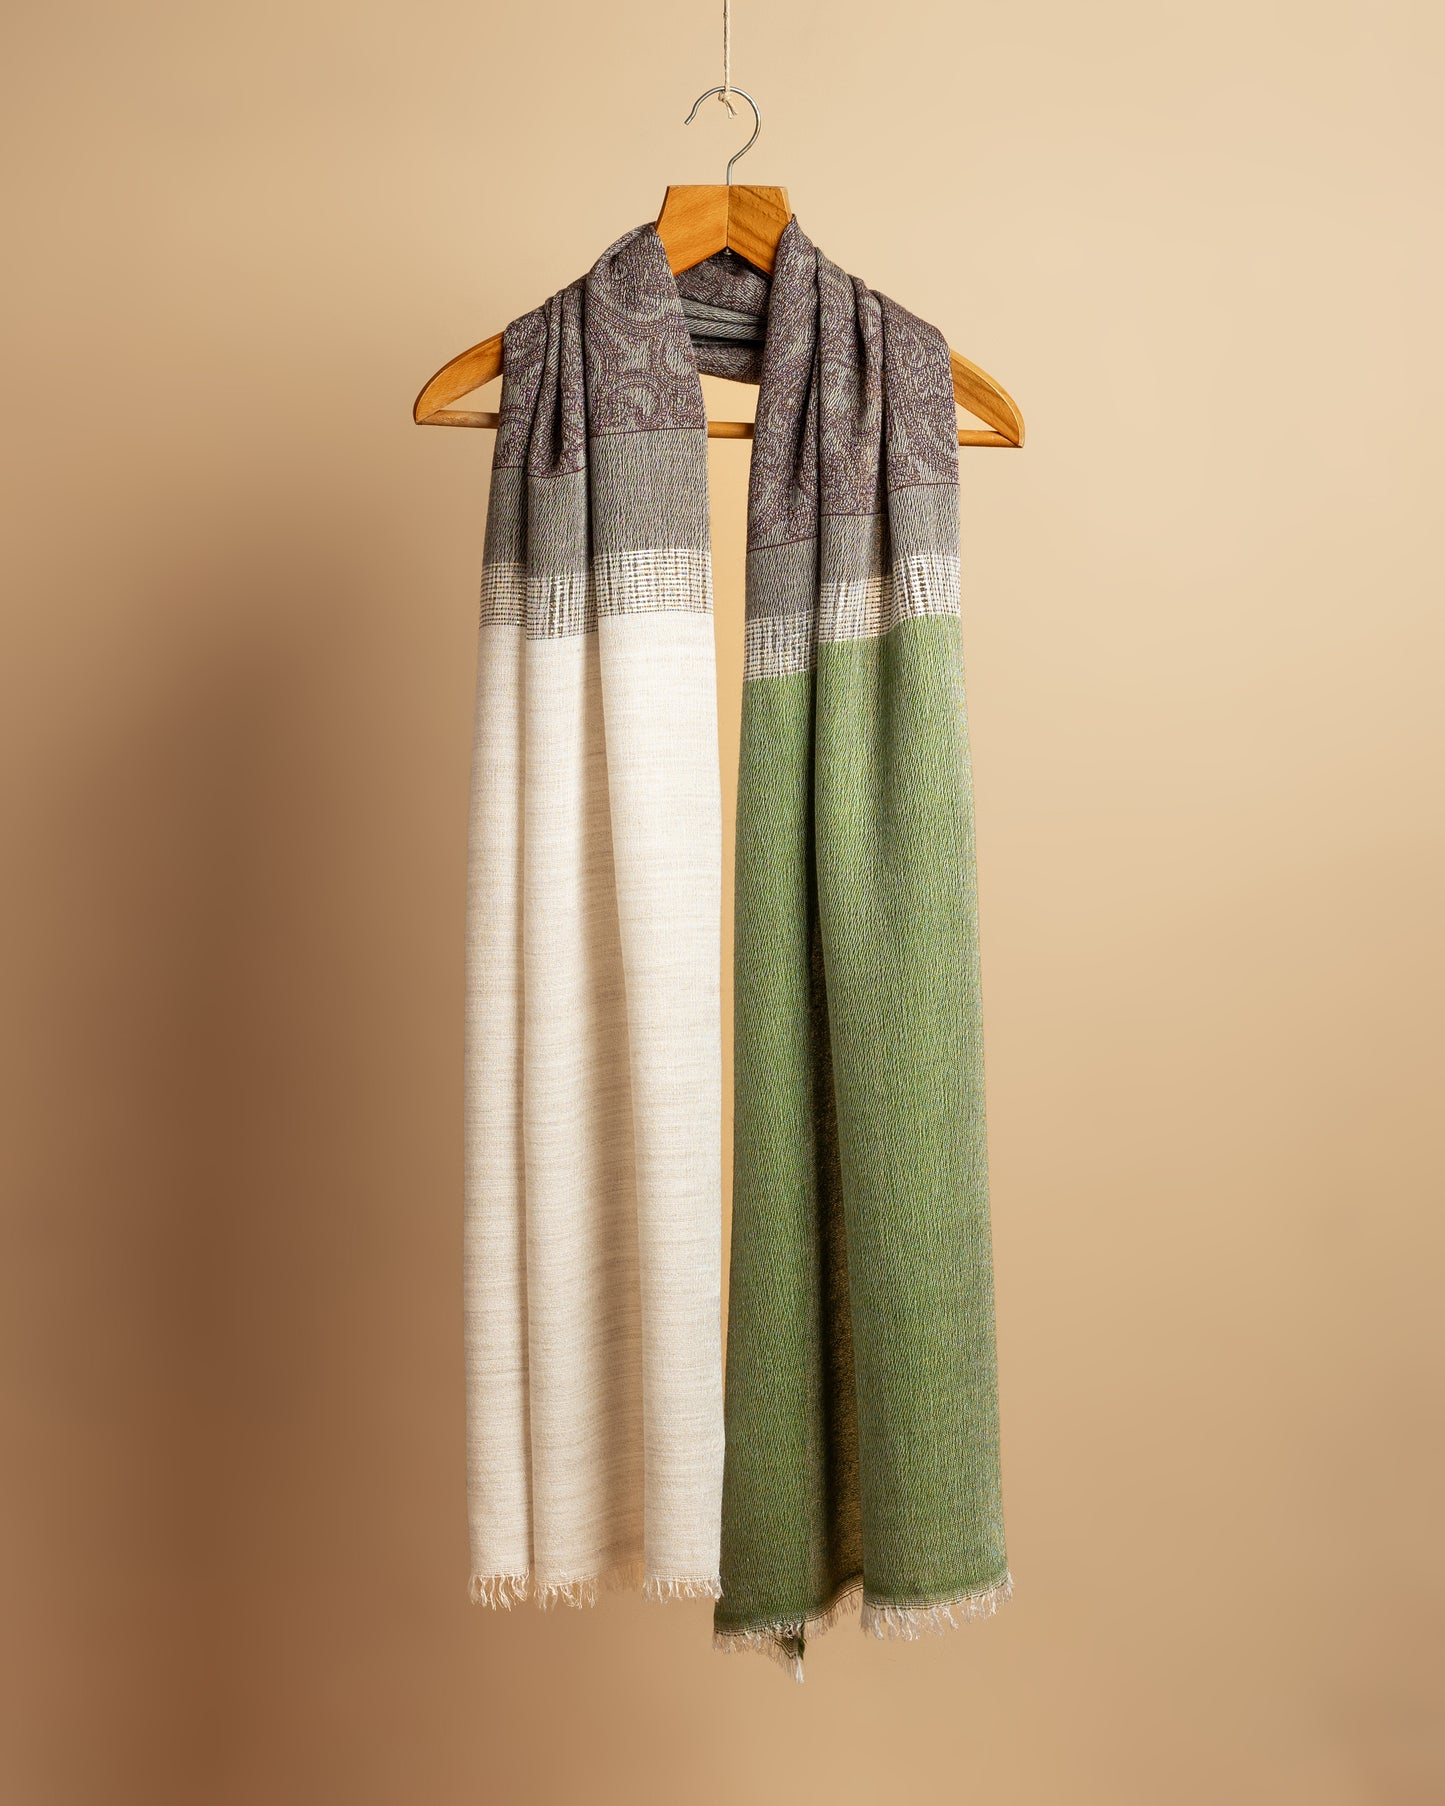 Sciarpa tricolore dai toni del verde e del marrone stampata a mano